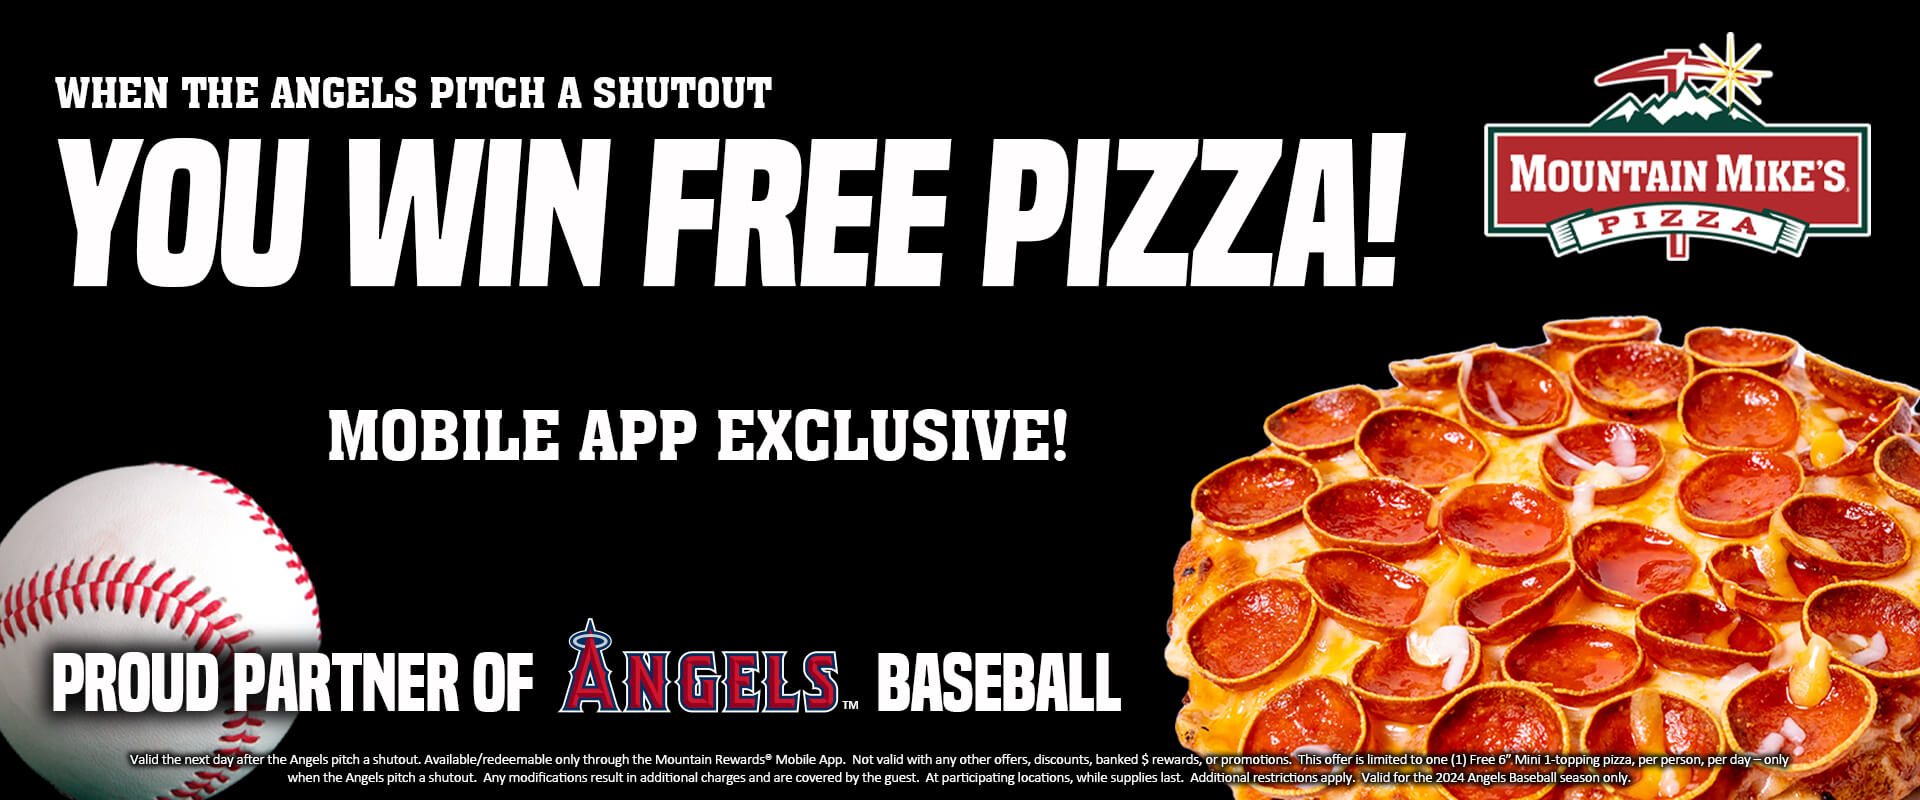 you win free pizza promo